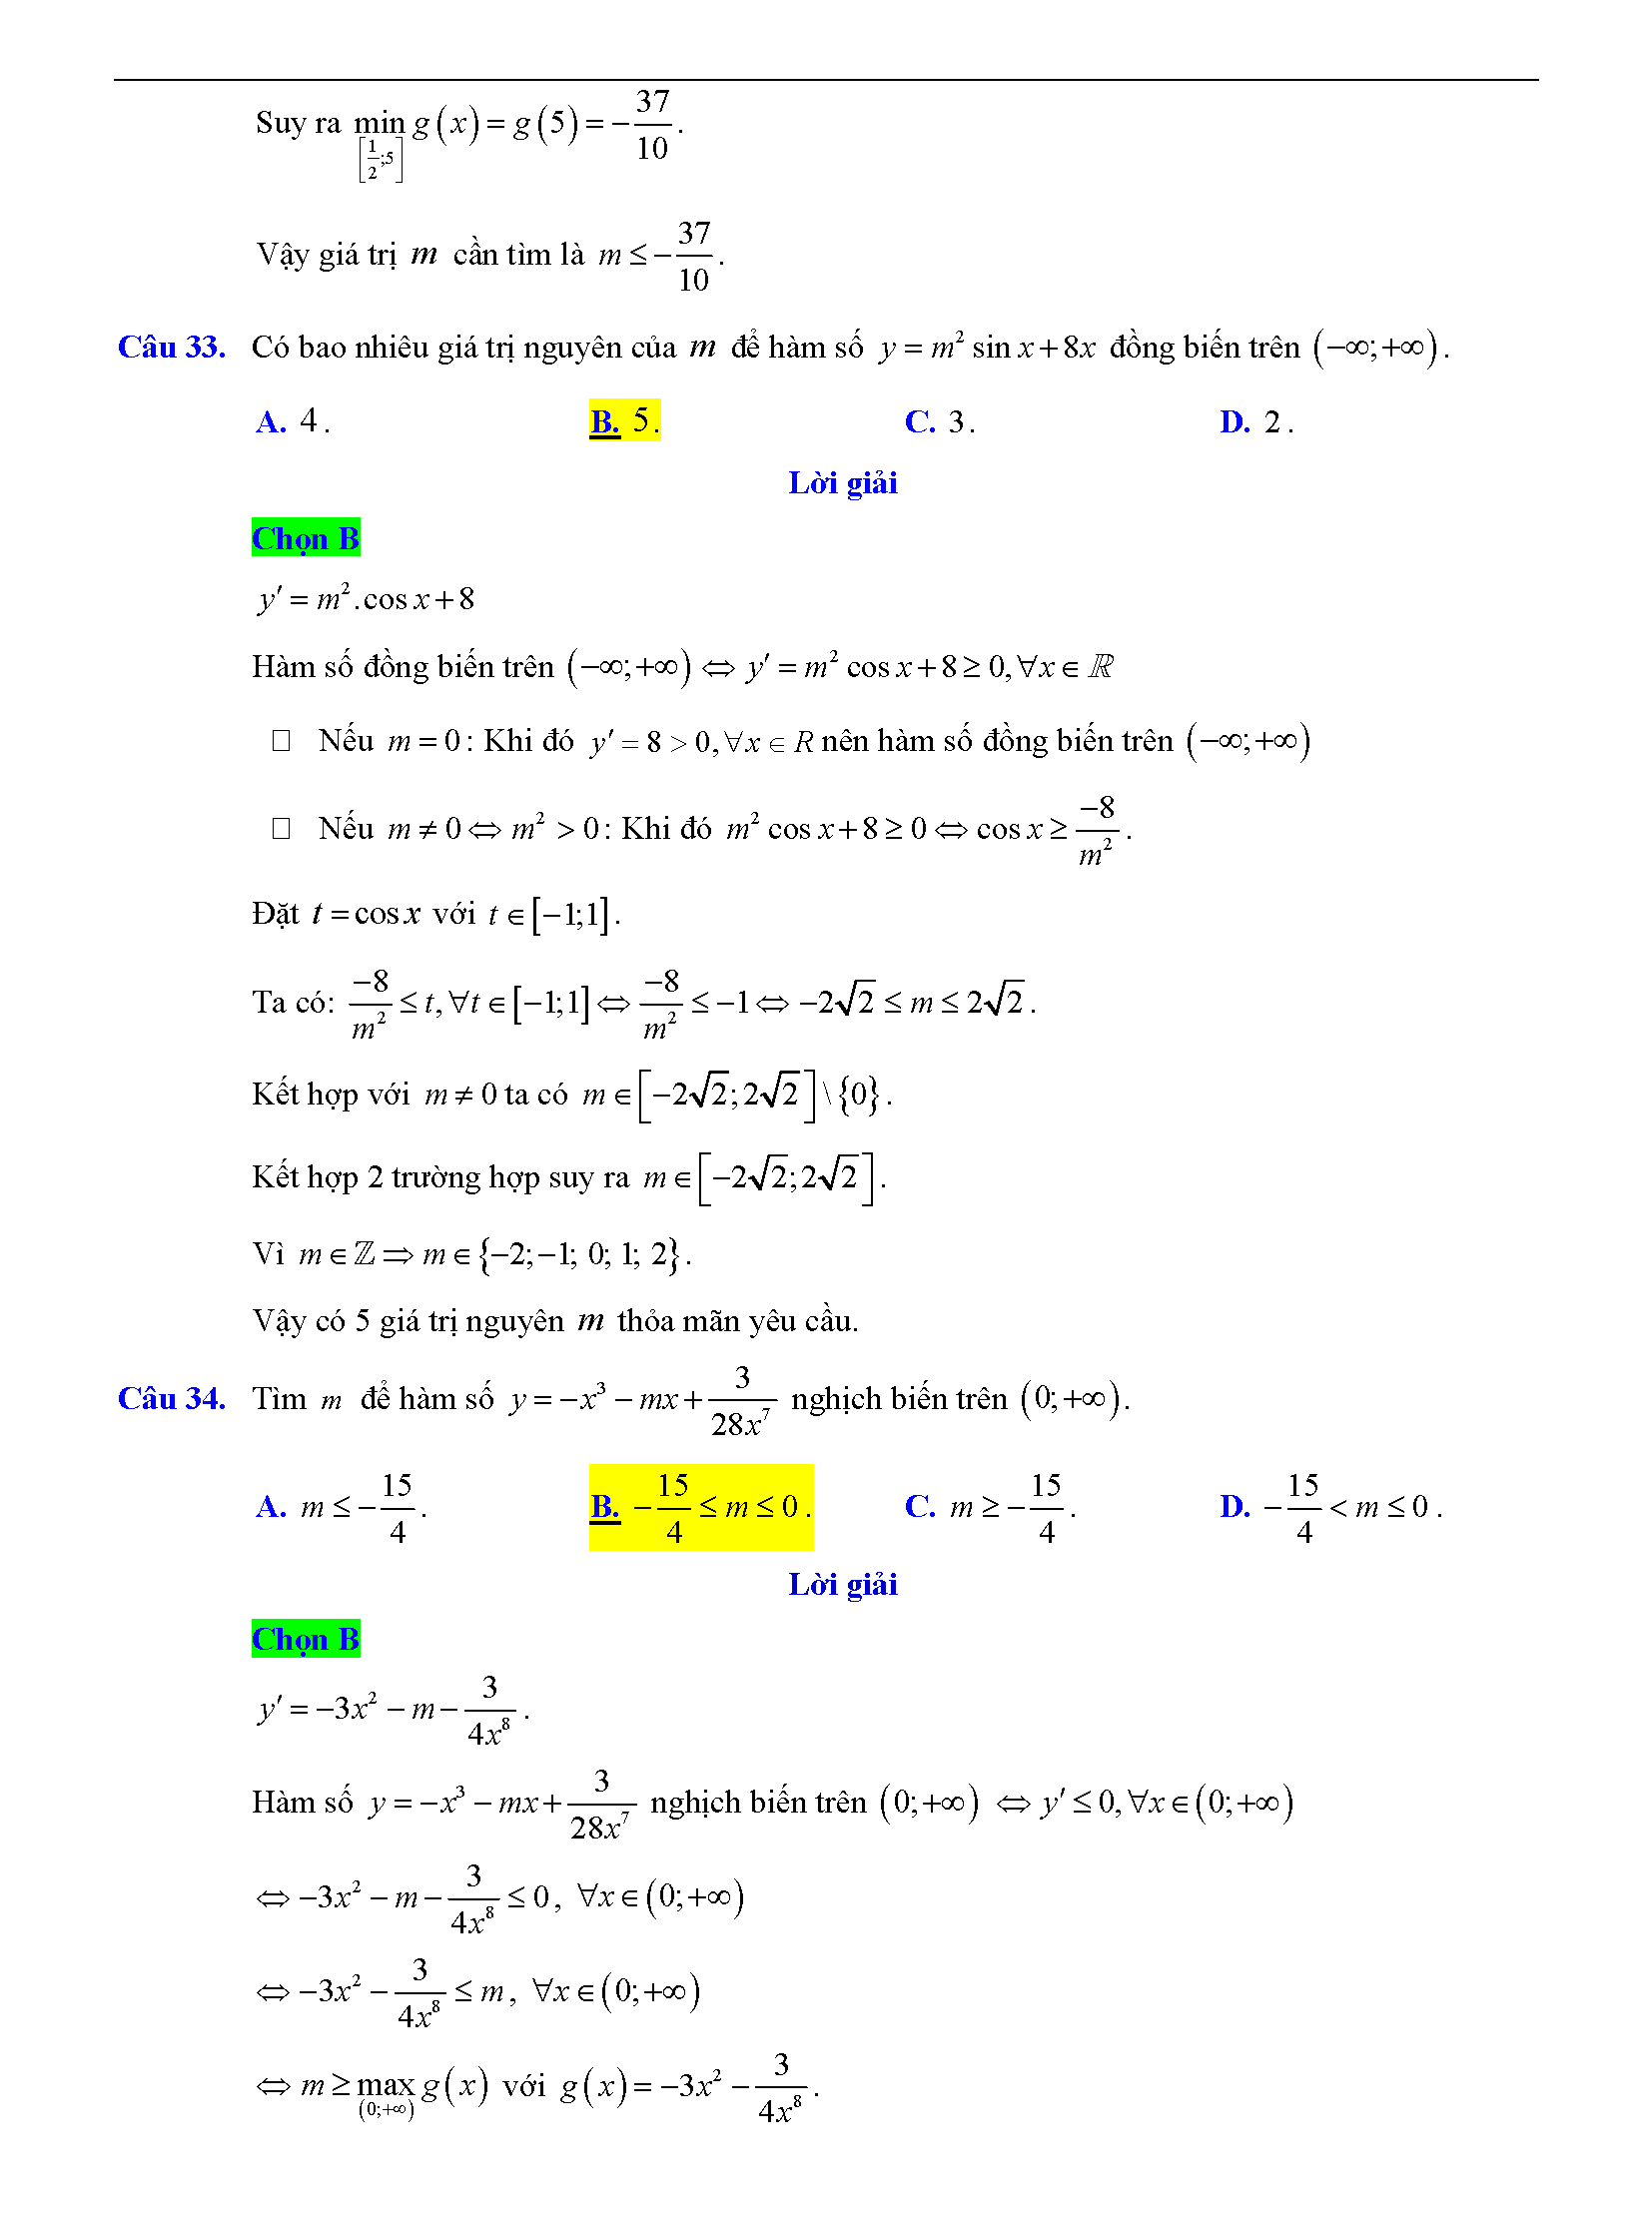 Trắc nghiệm tìm m để hàm số đơn điệu 21